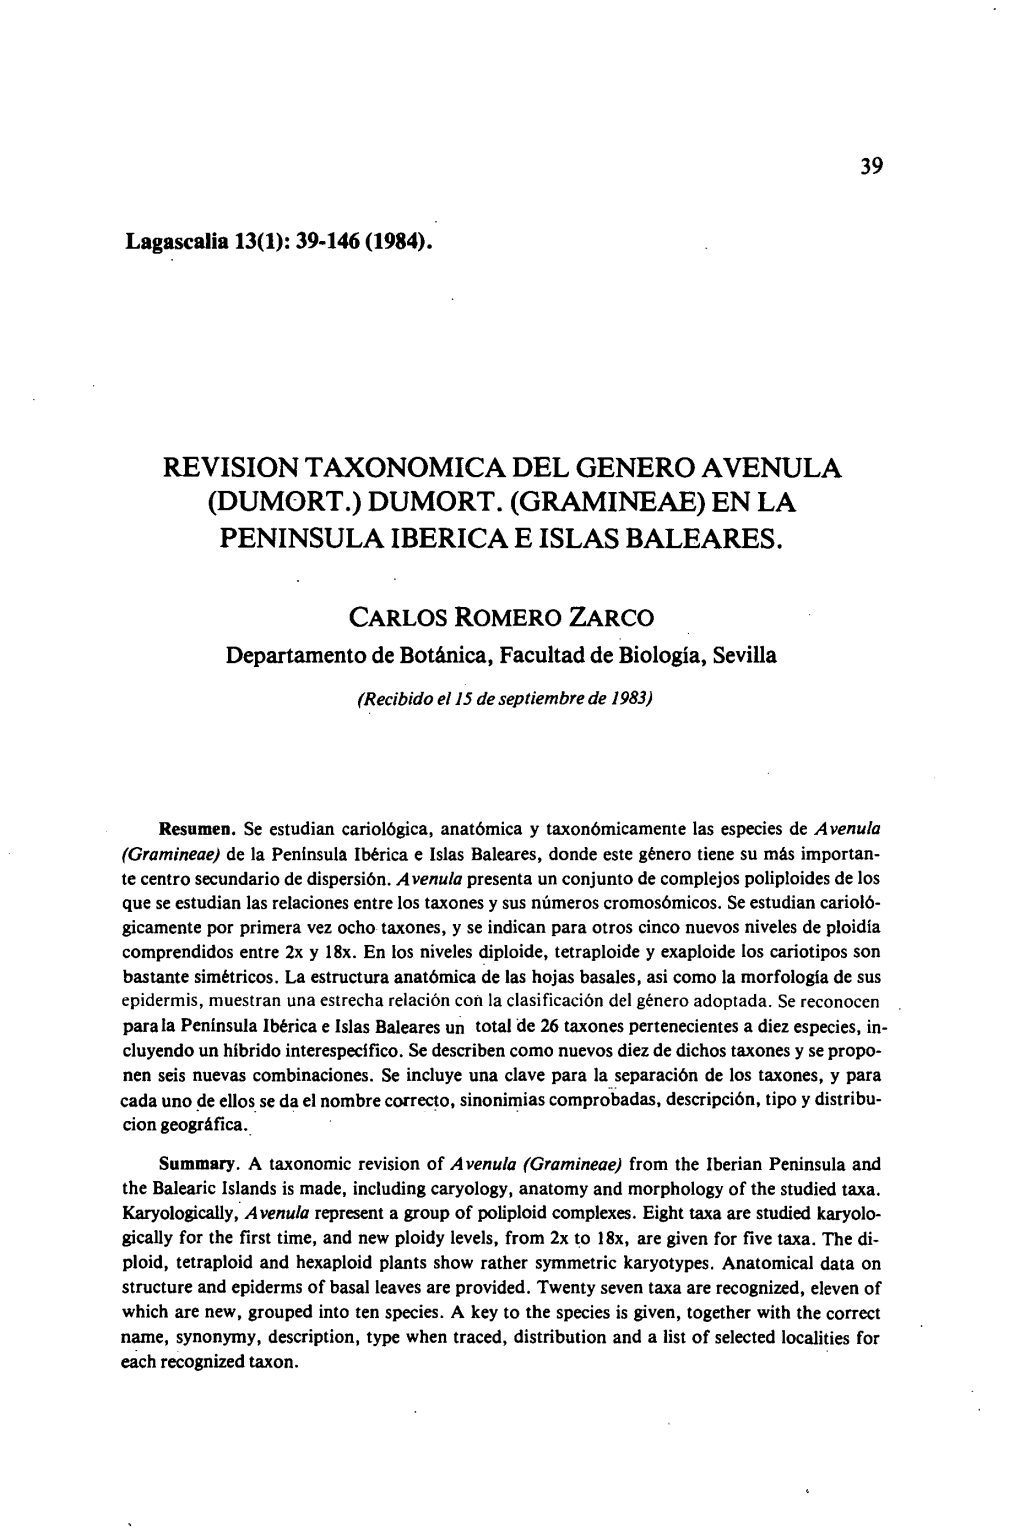 Revision Taxonomica Del Genero Avenula (Dumort.) Dumort